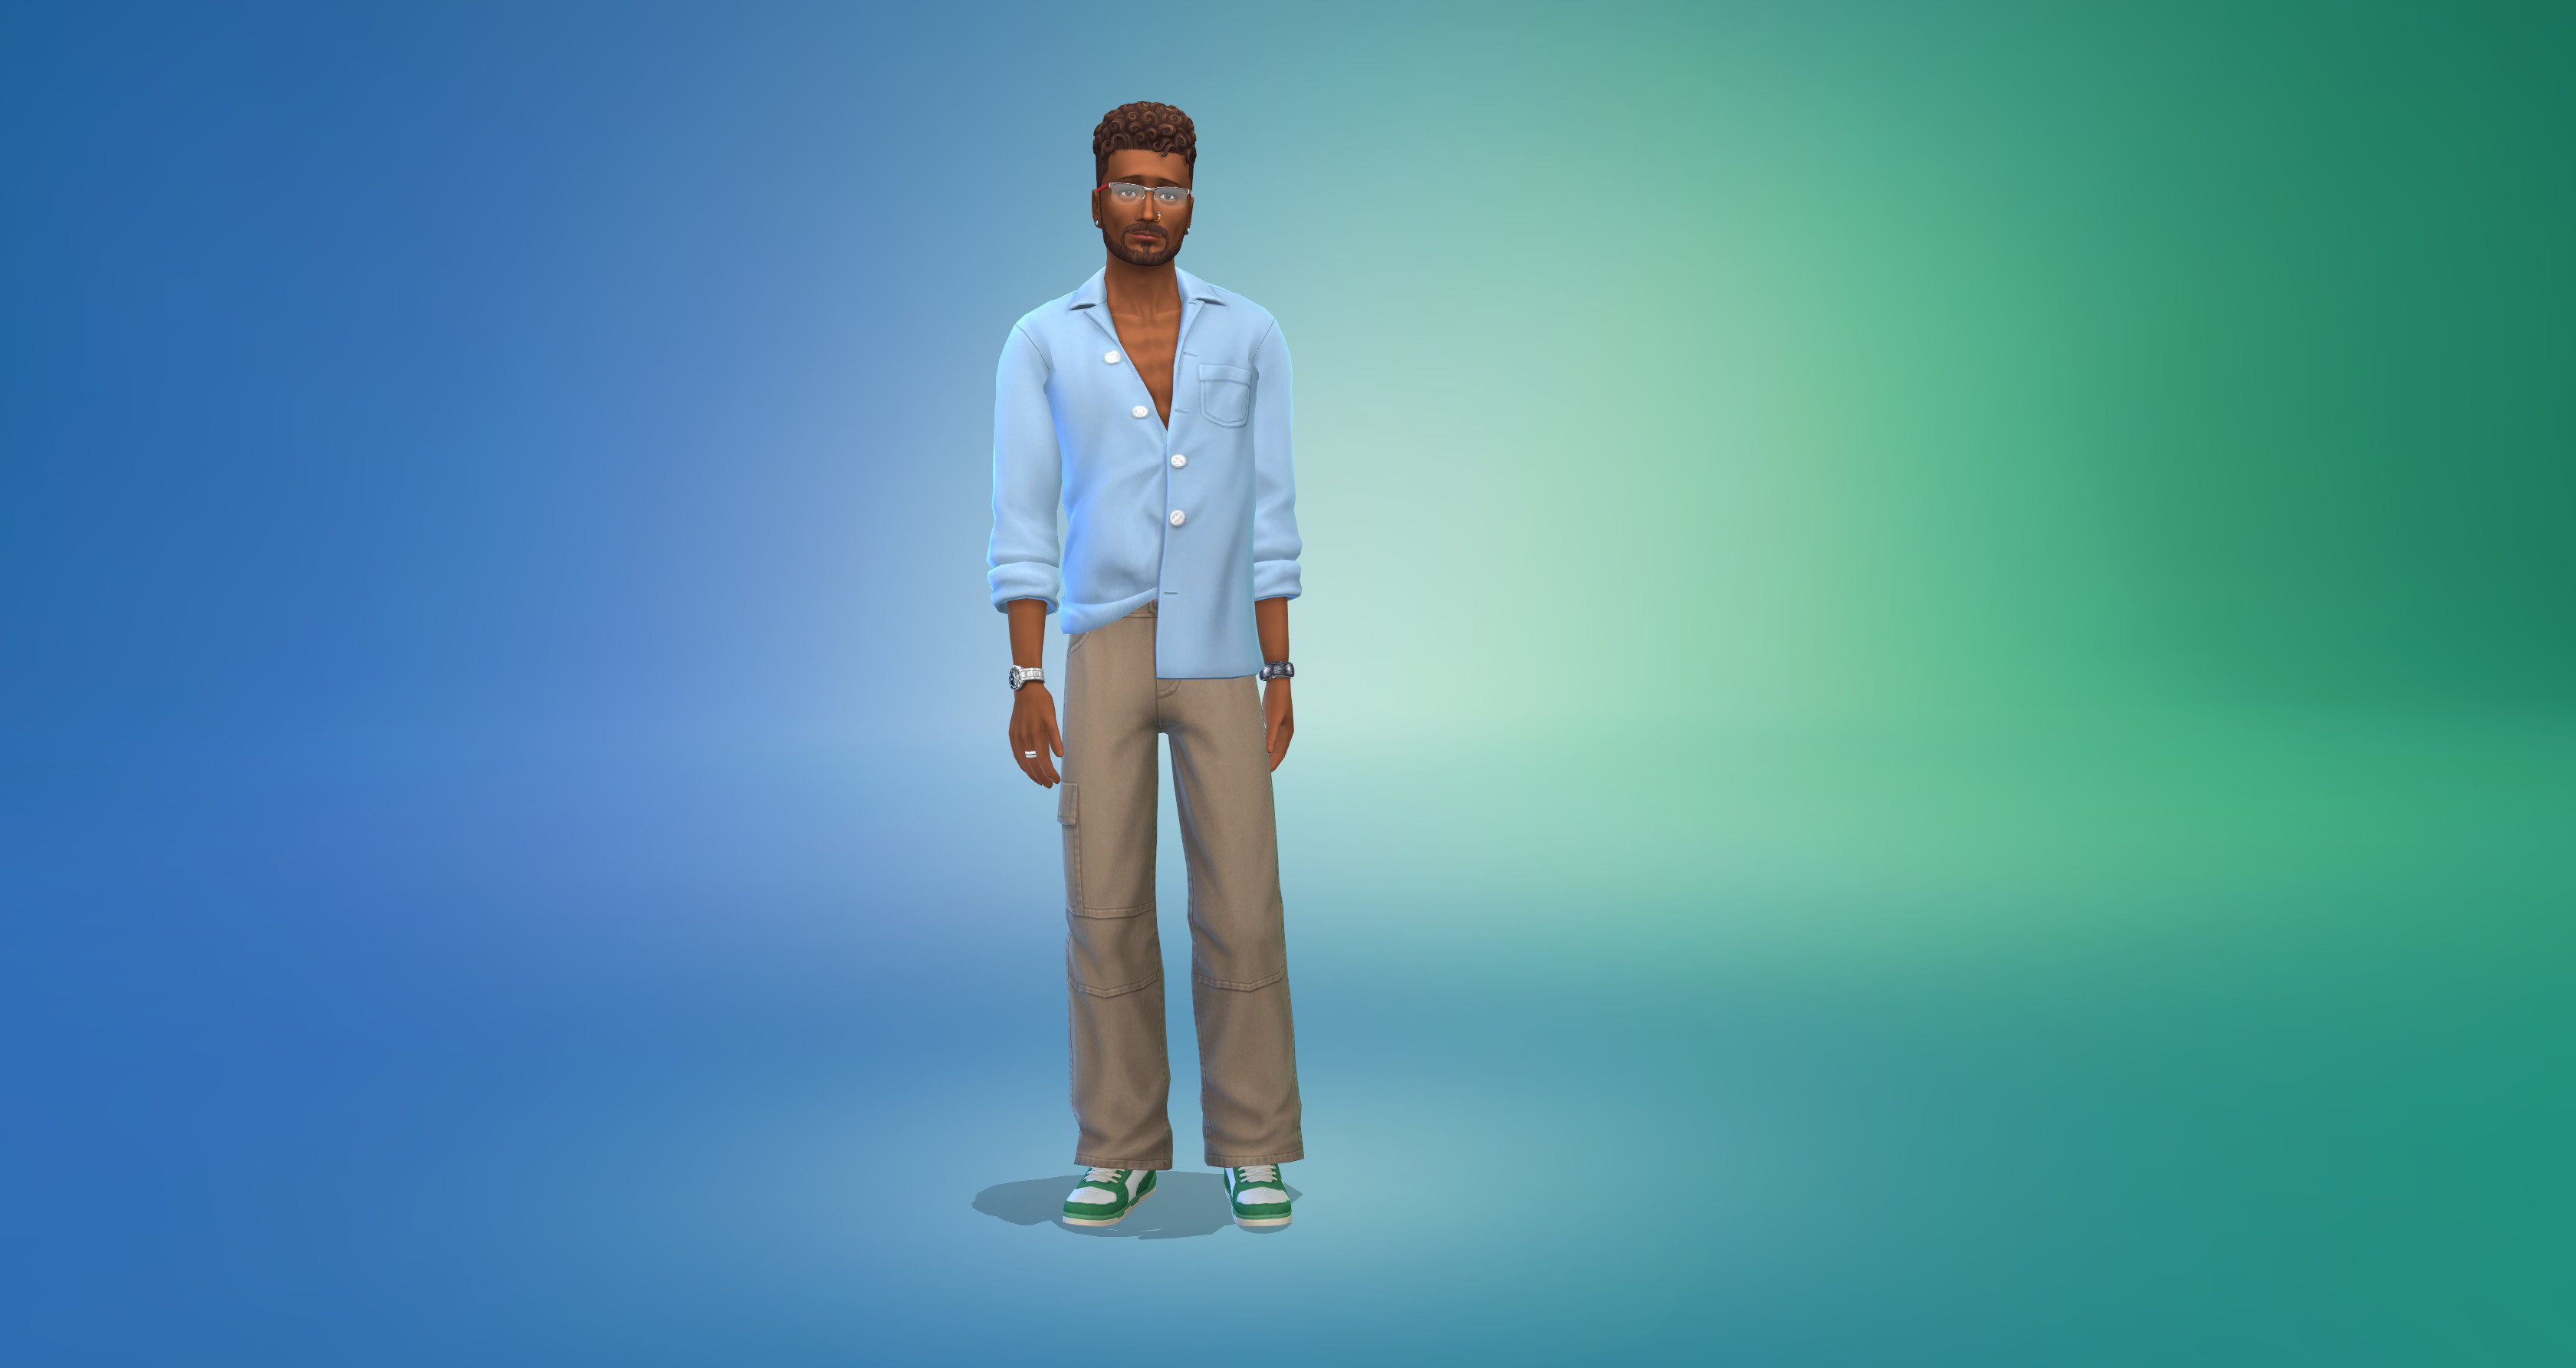 Les nouveaux vêtements du kit Sims 4 Tenues de Soirée